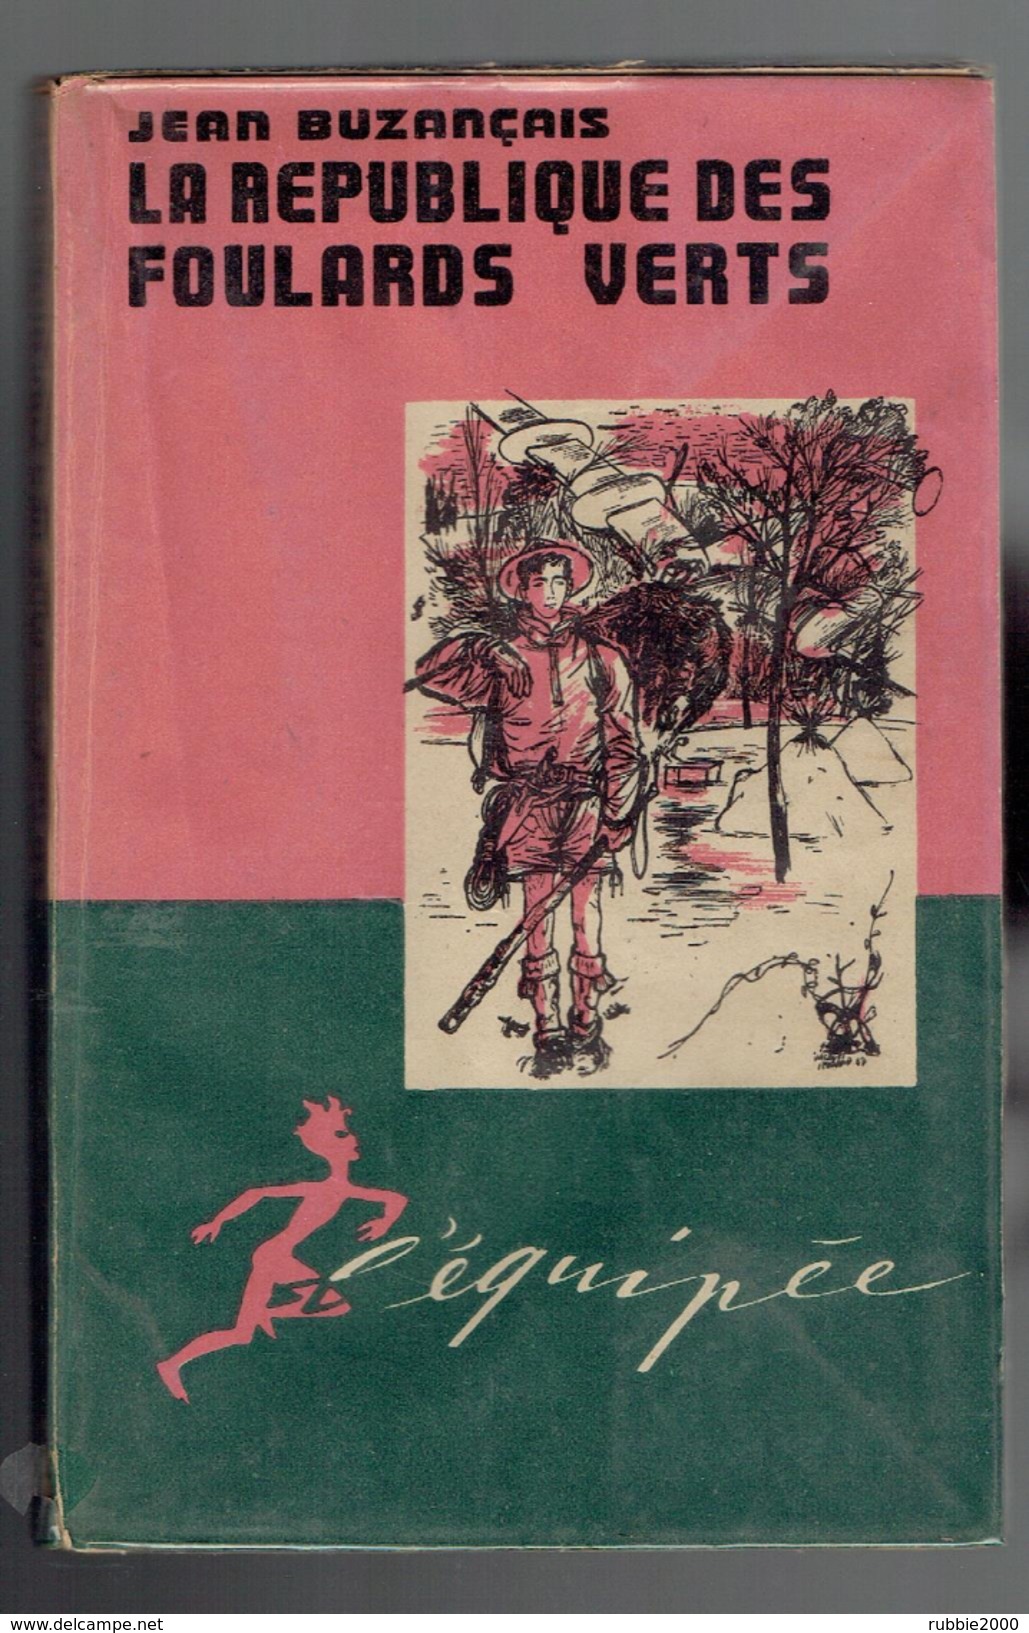 LA REPUBLIQUE DES FOULARDS VERTS PAR JEAN BUZENCAIS 1947 ILLUSTRATIONS JACQUES PECNARD L EQUIPEE EDITIONS DE L ARC - Scouting